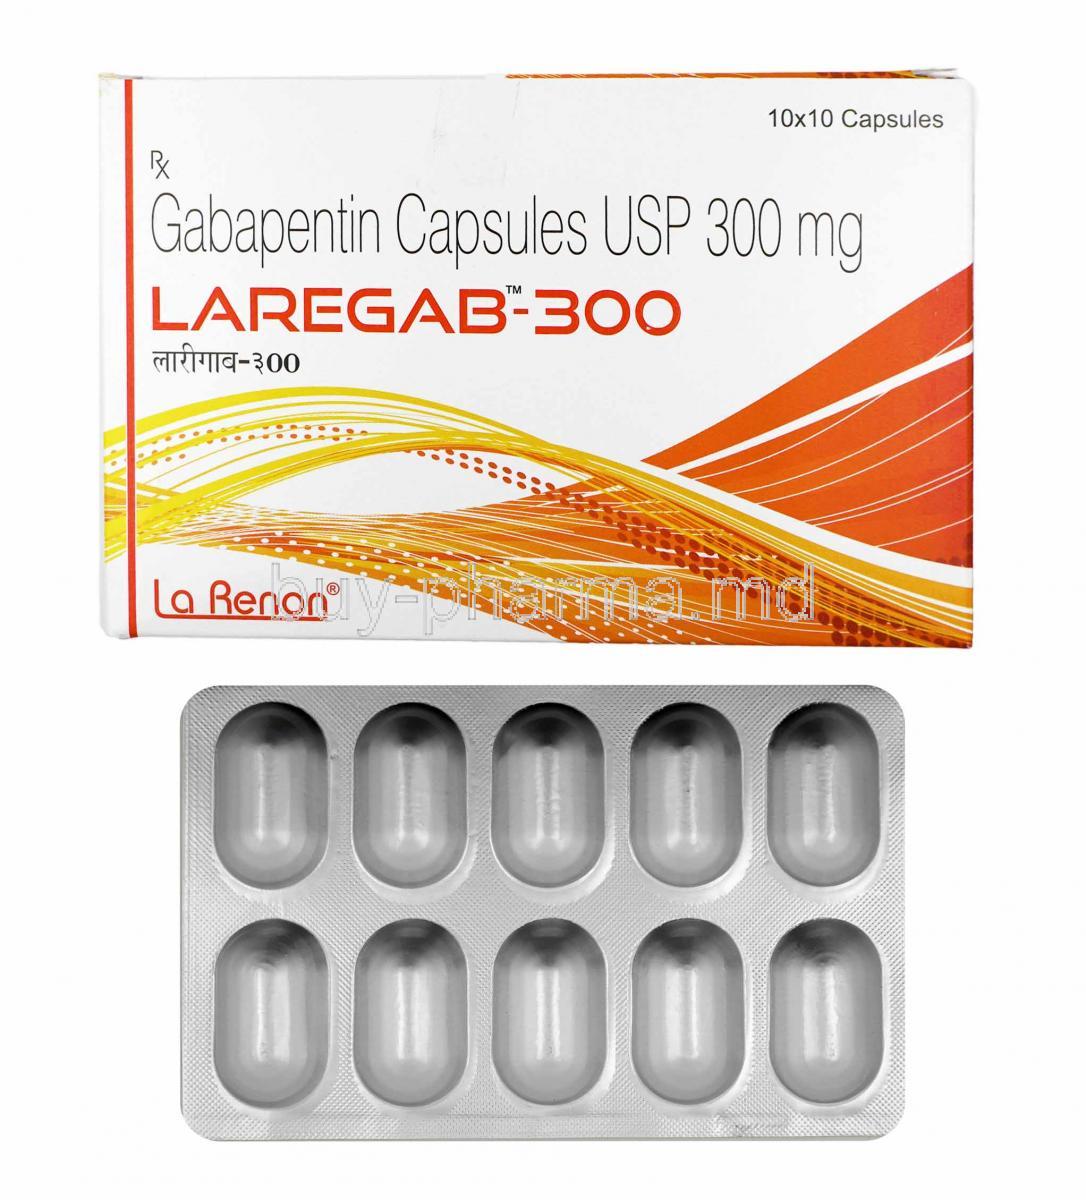 Laregab, Gabapentin 300mg box and capsules